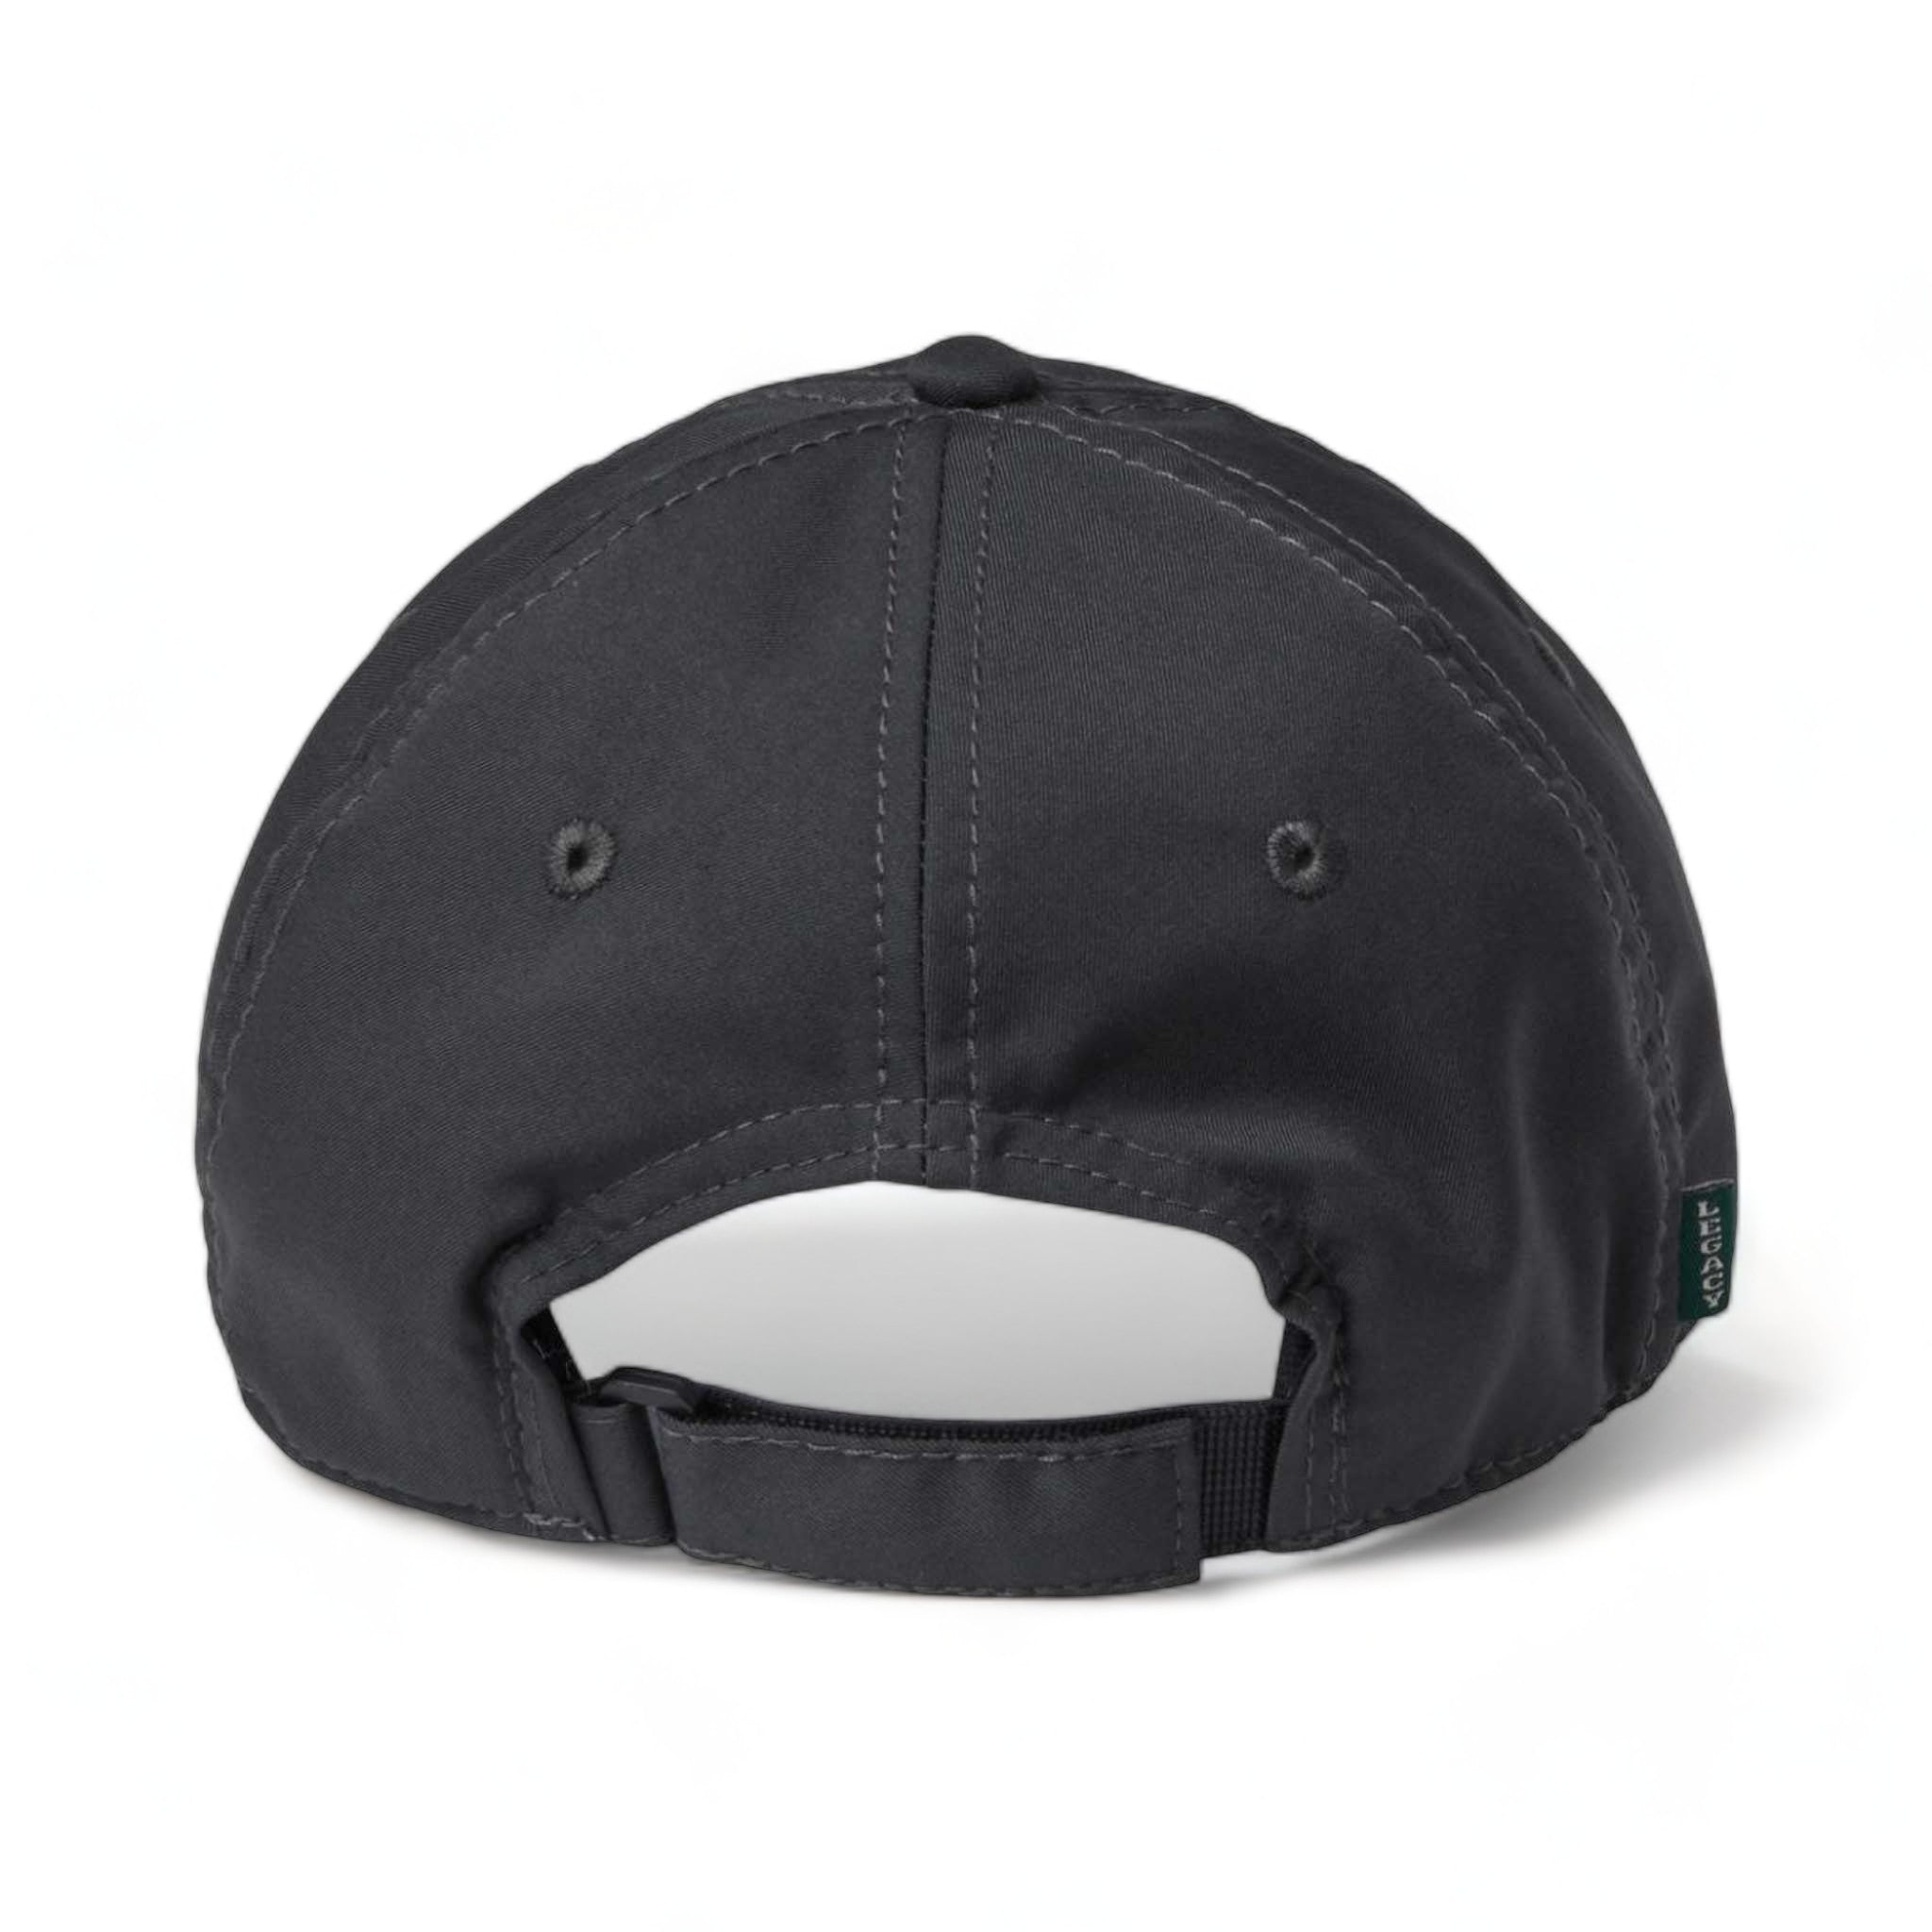 Back view of LEGACY CFA custom hat in dark grey